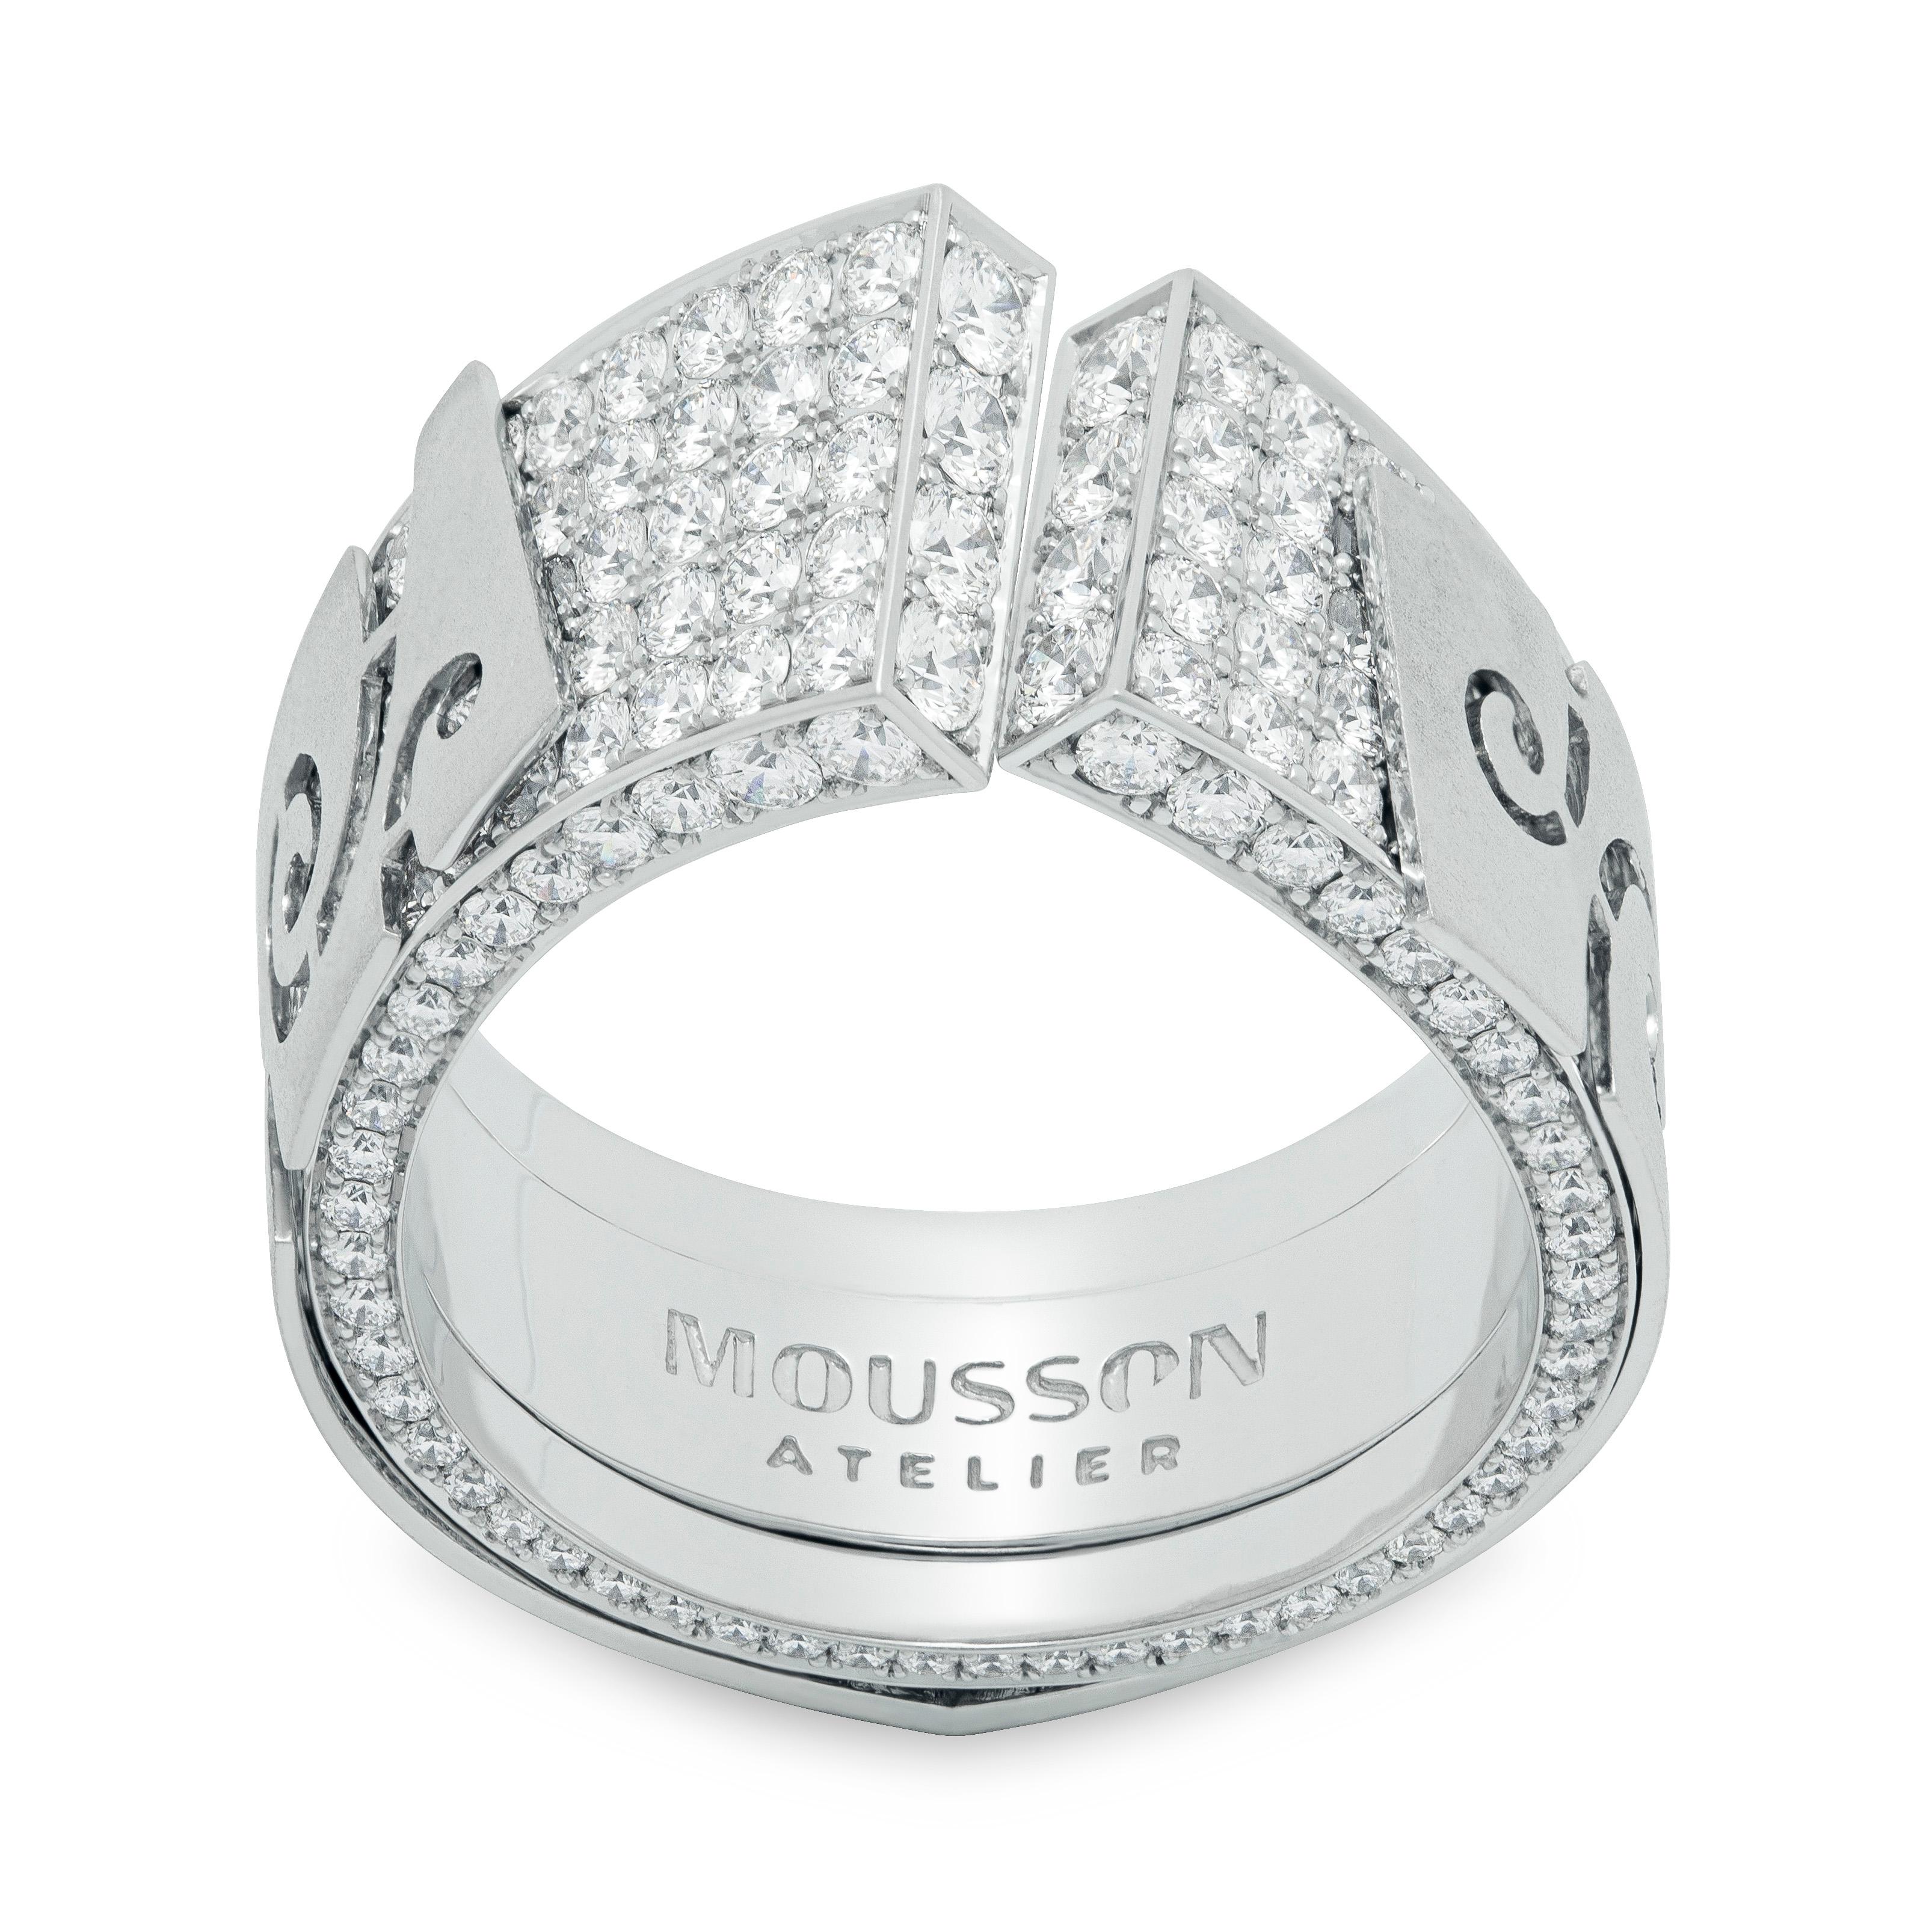 Bague Veil en or blanc 18 carats avec diamants

Veil a inspiré cette série de bijoux à nos designers. Par exemple, cet anneau semble avoir deux couches. La première couche est un 